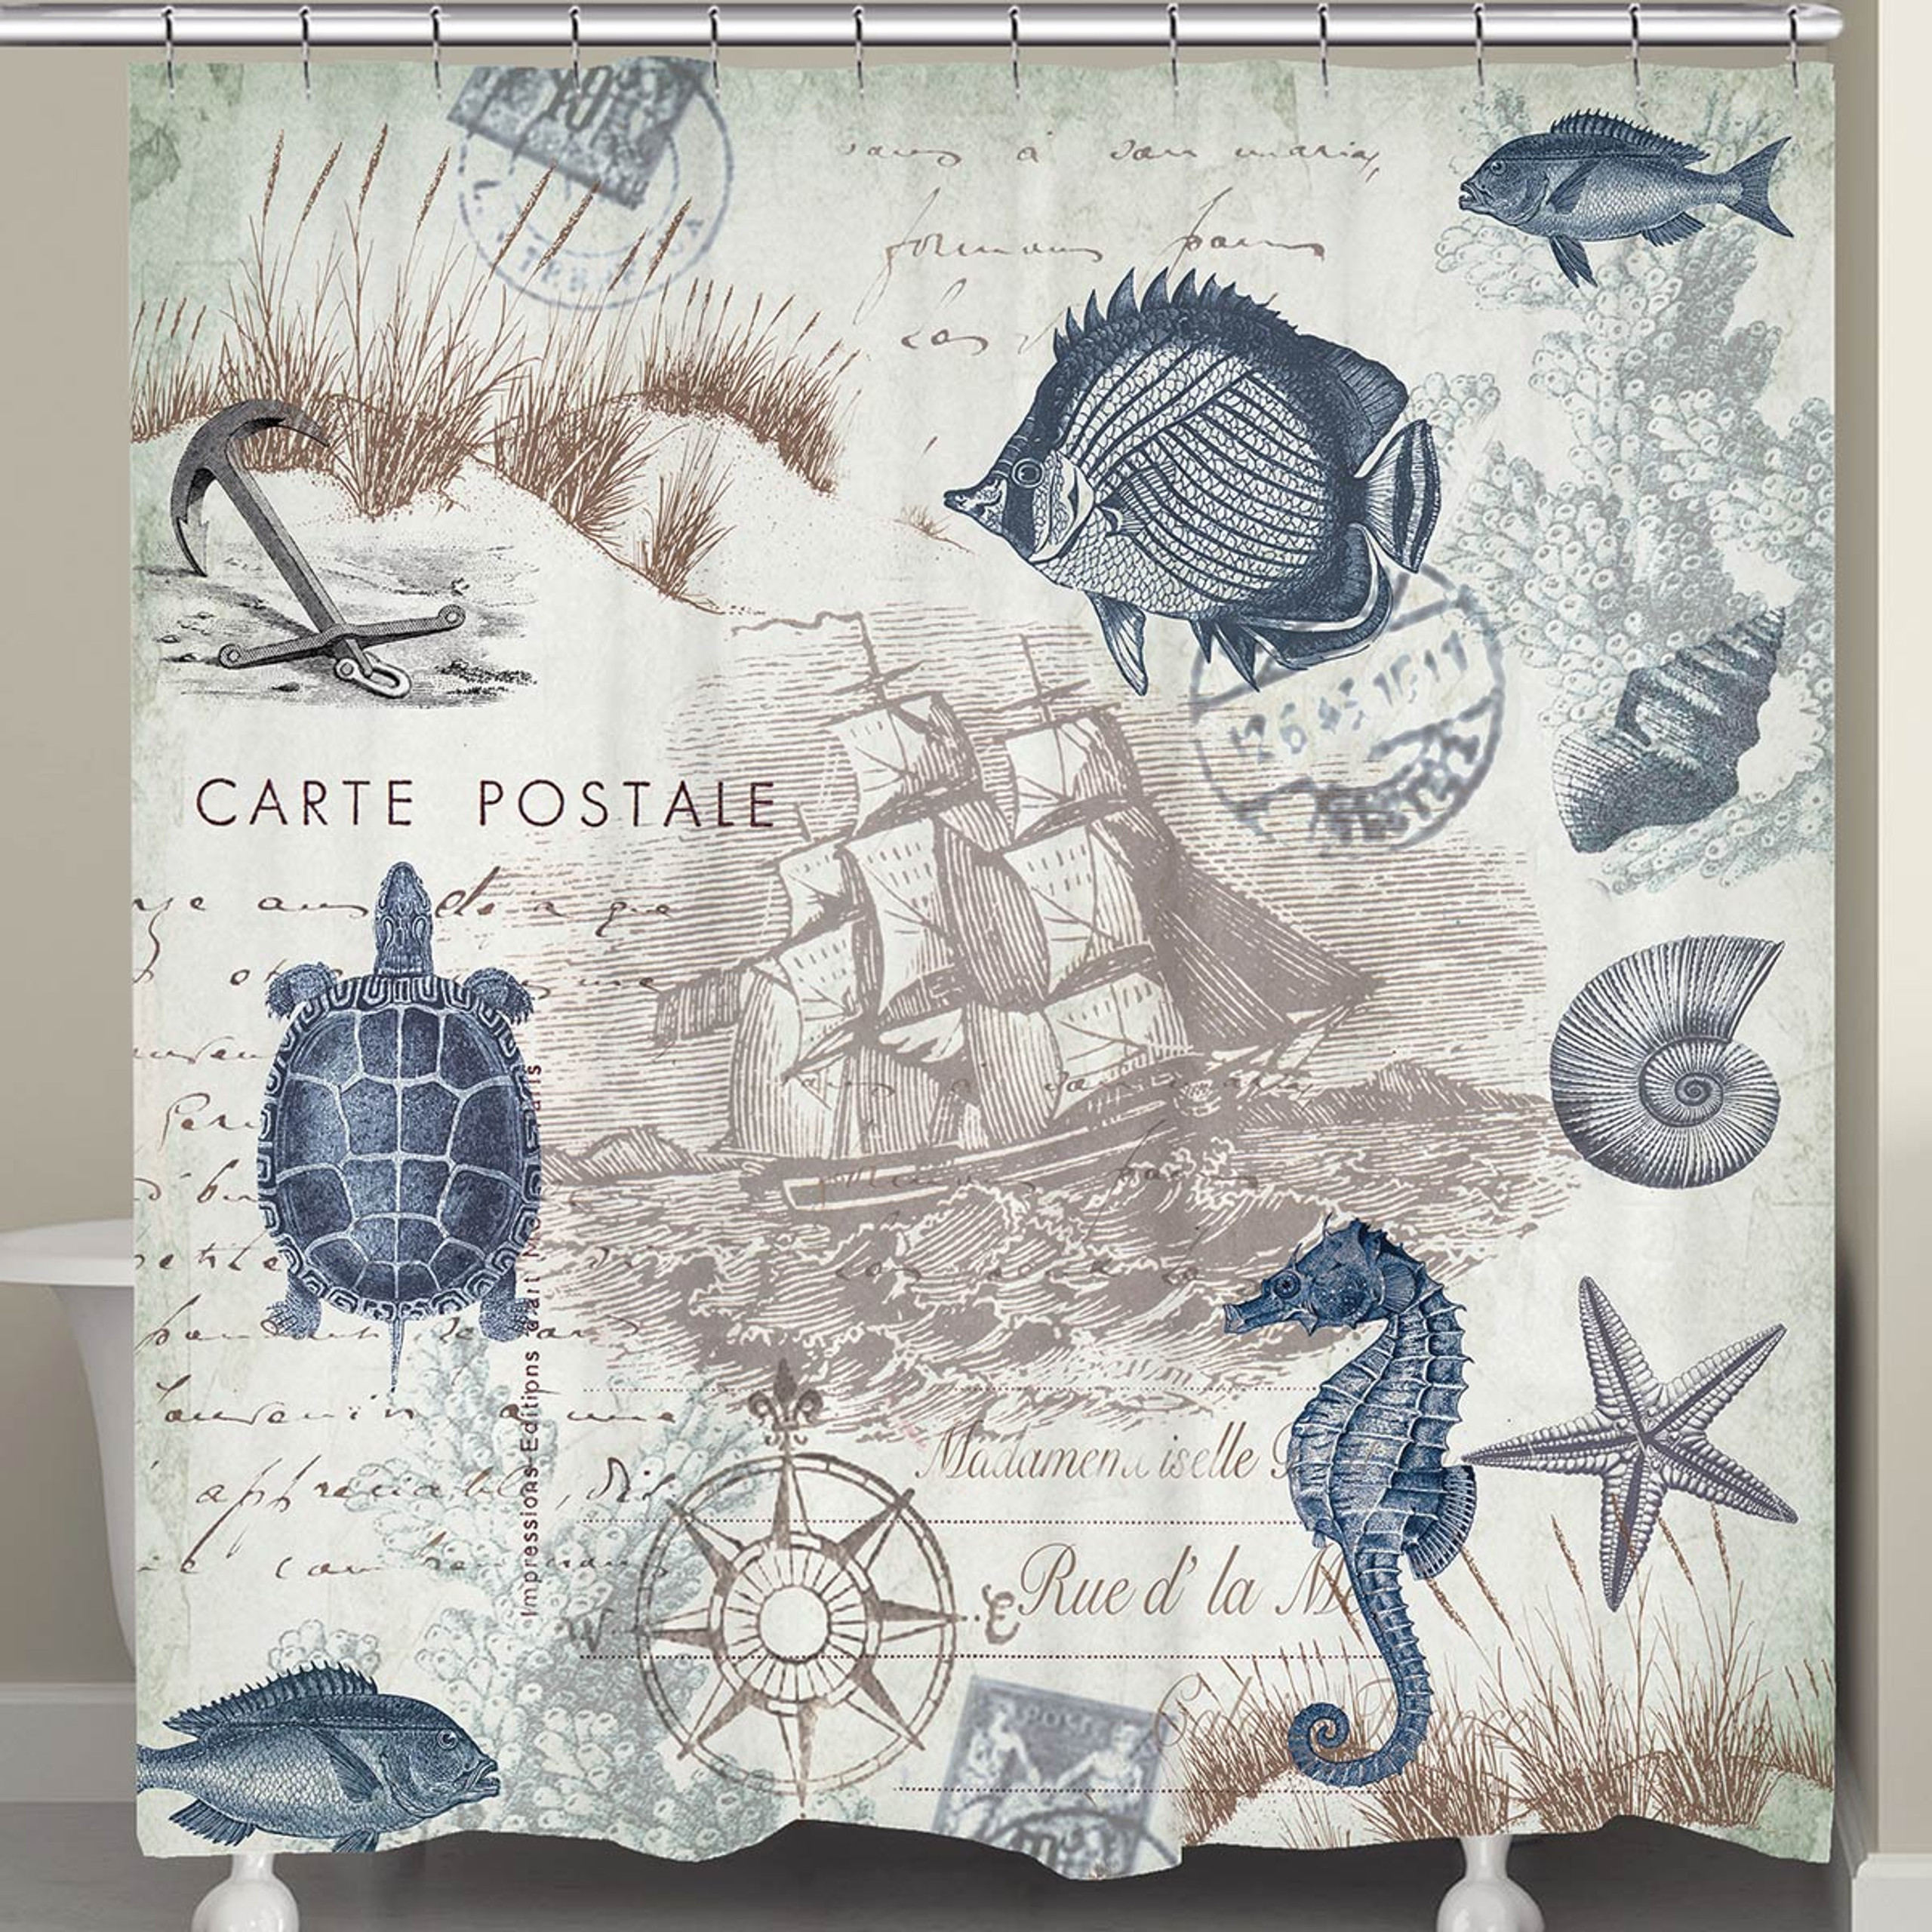 Coastal Bedding: Carte Postale Bedding Collection